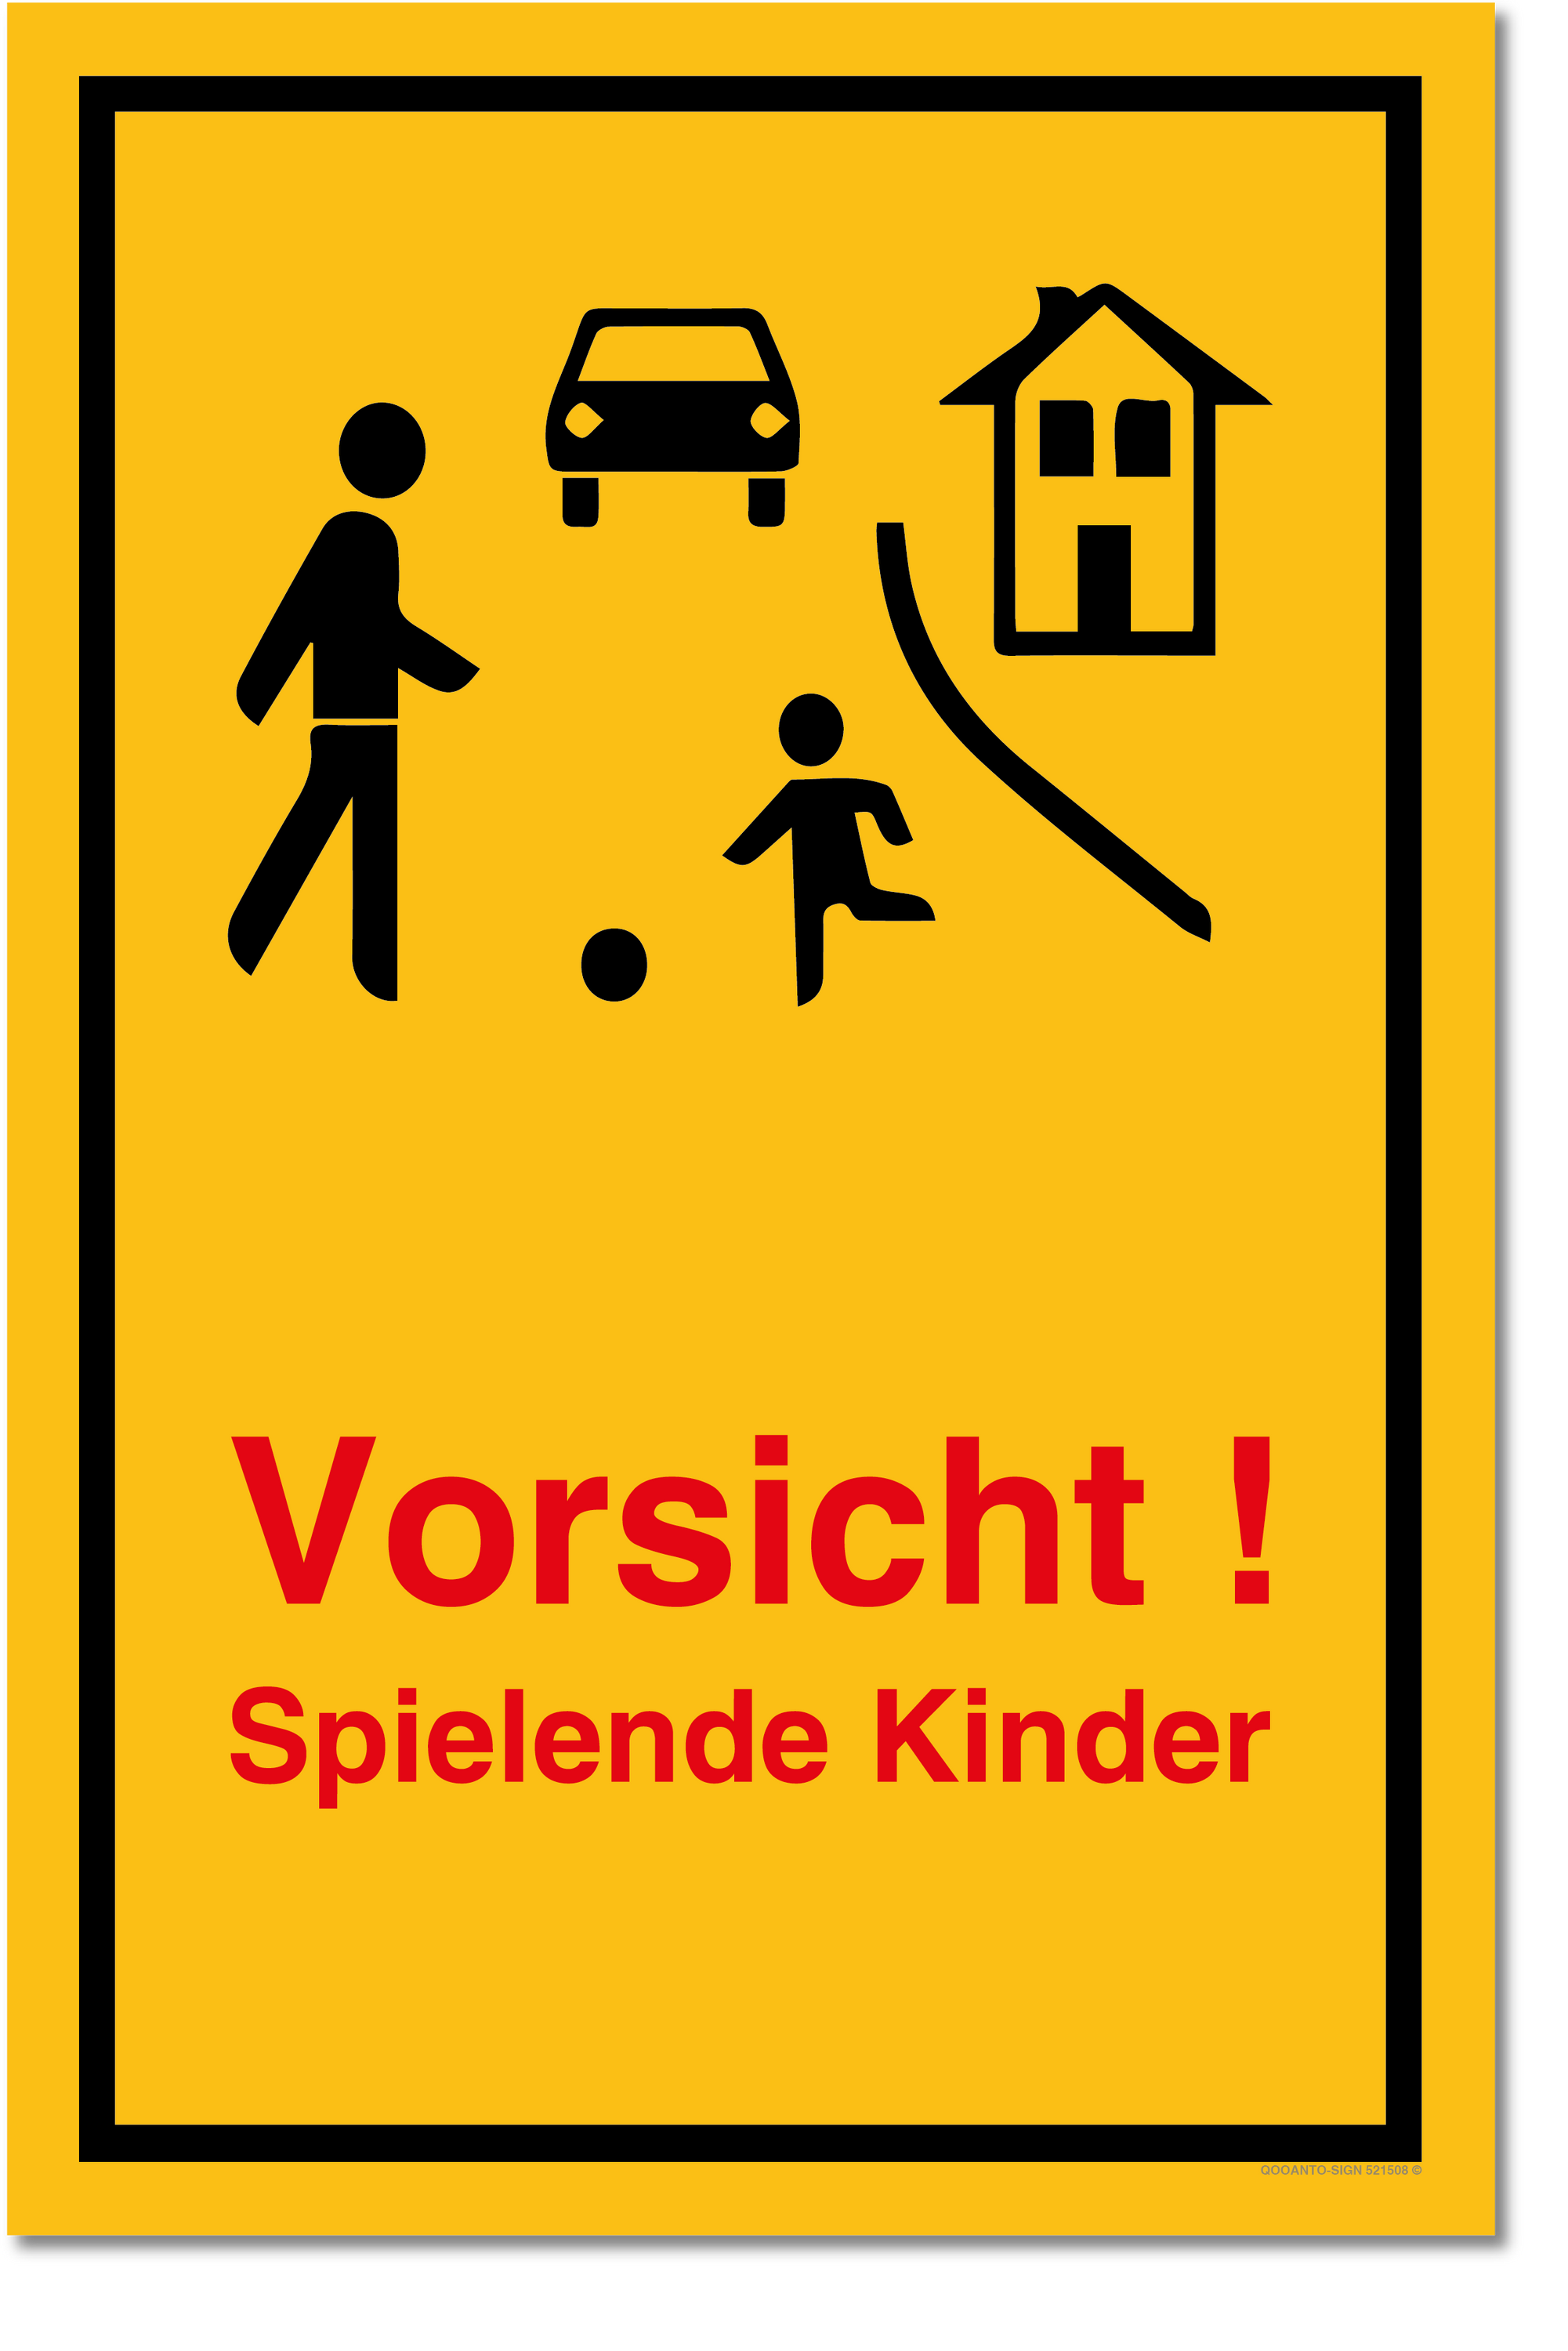 Achtung Kinder Schild, Achtung Kinder Wohnstrasse Gelb, aus Alu-Verbund, mit UV-Schutz